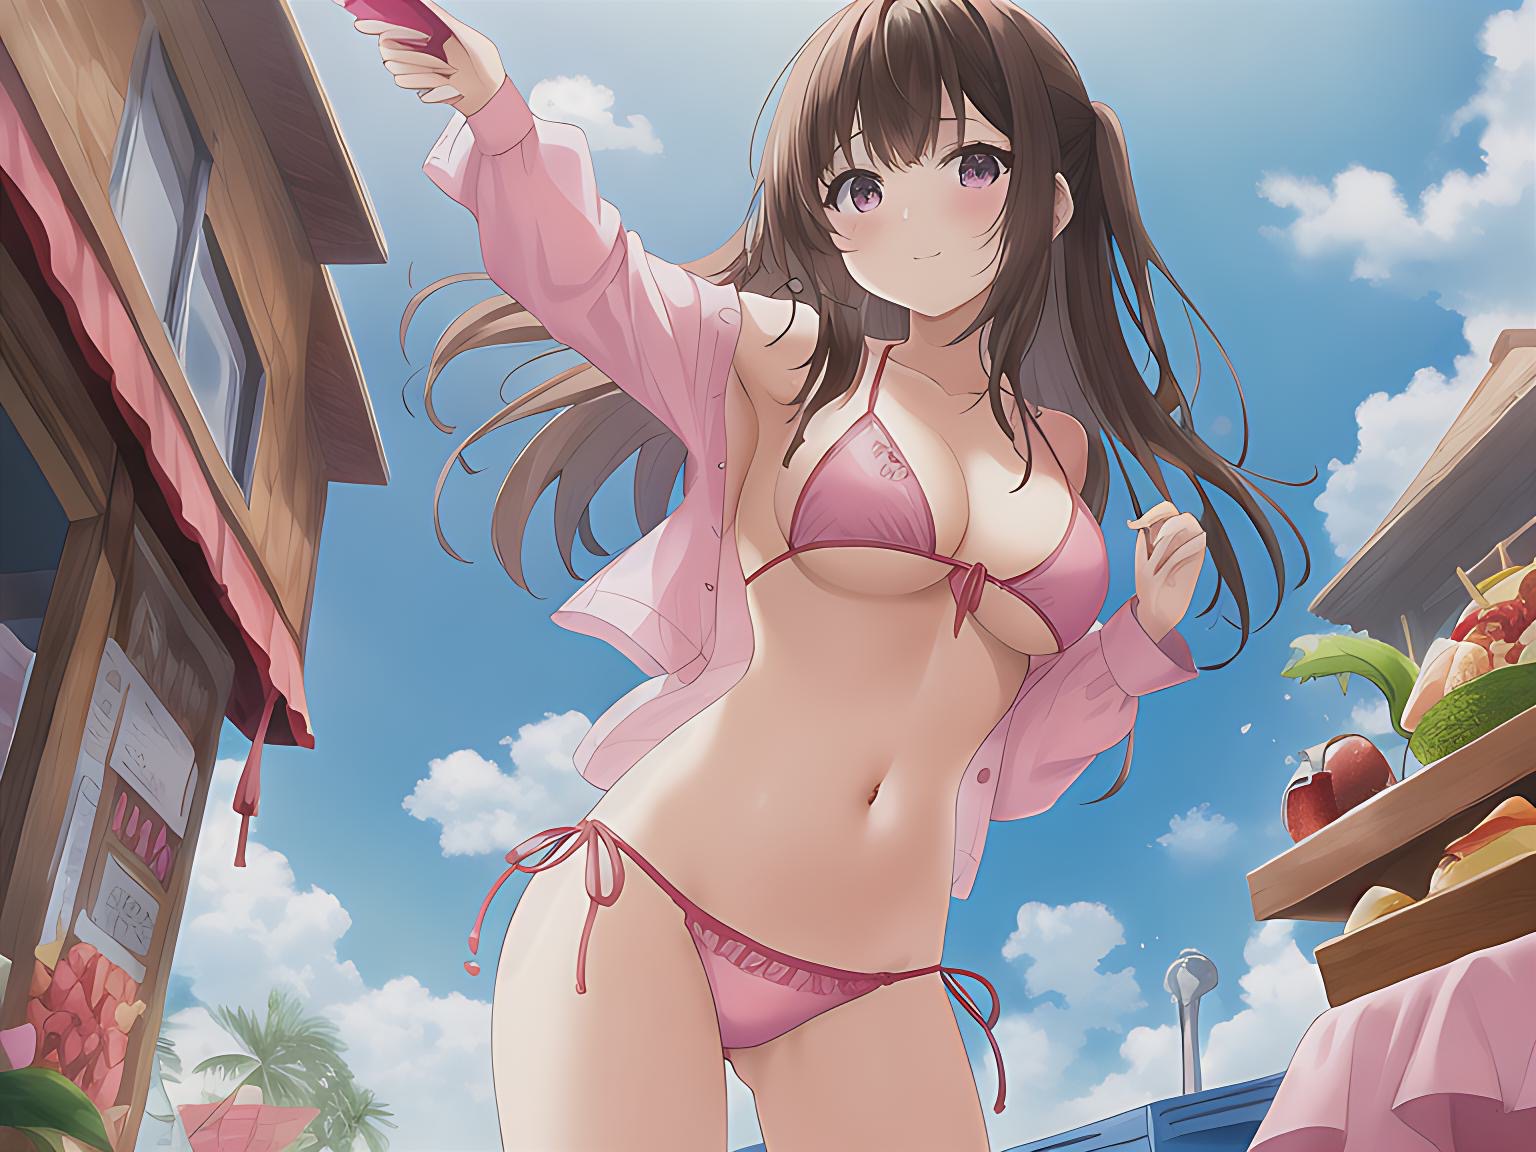 A candid image of Anime girl Tamanai